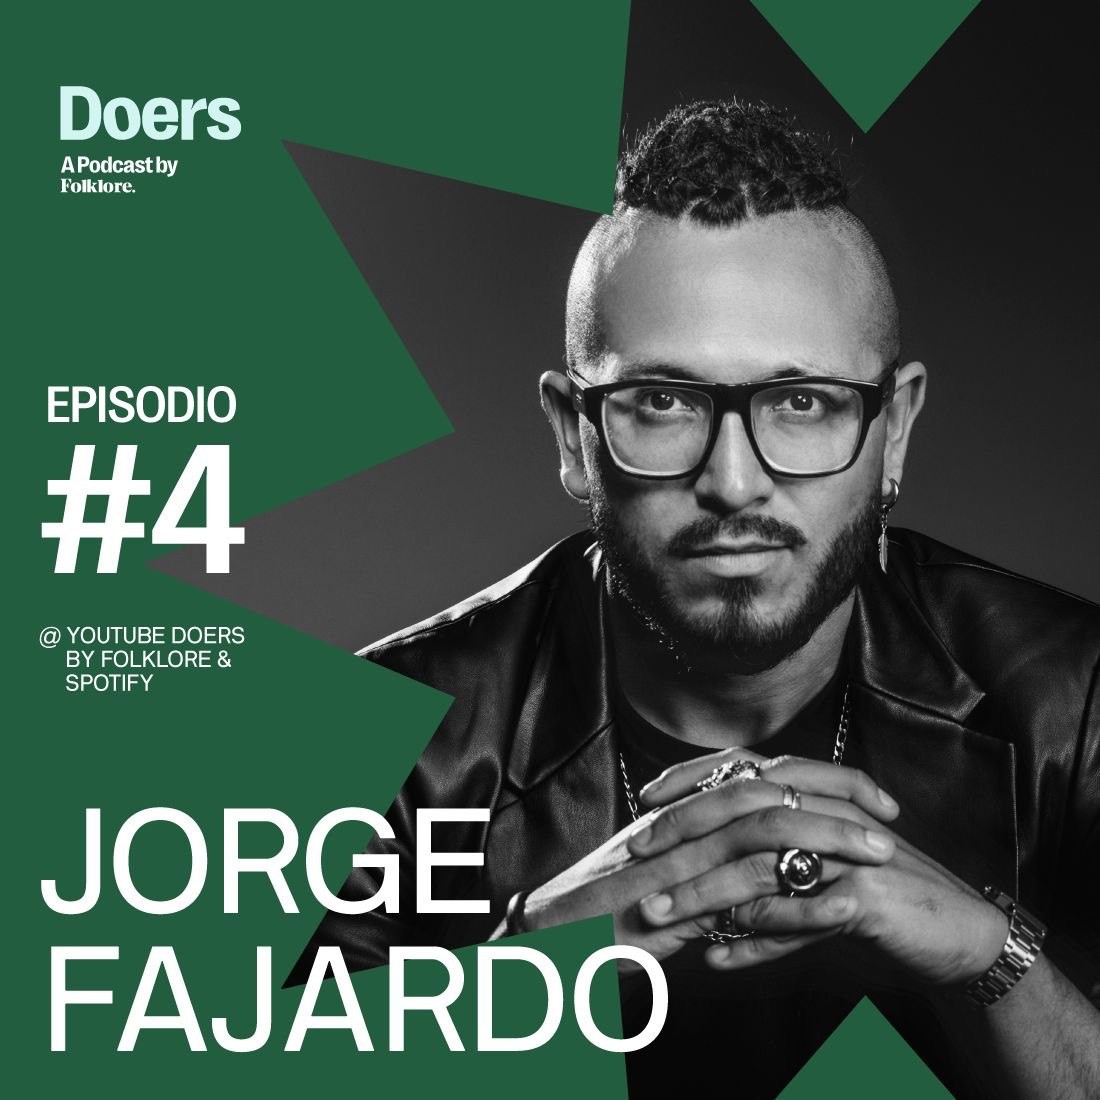 Jorge Fajardo - Aprender y crecer: la clave para superar los desafíos